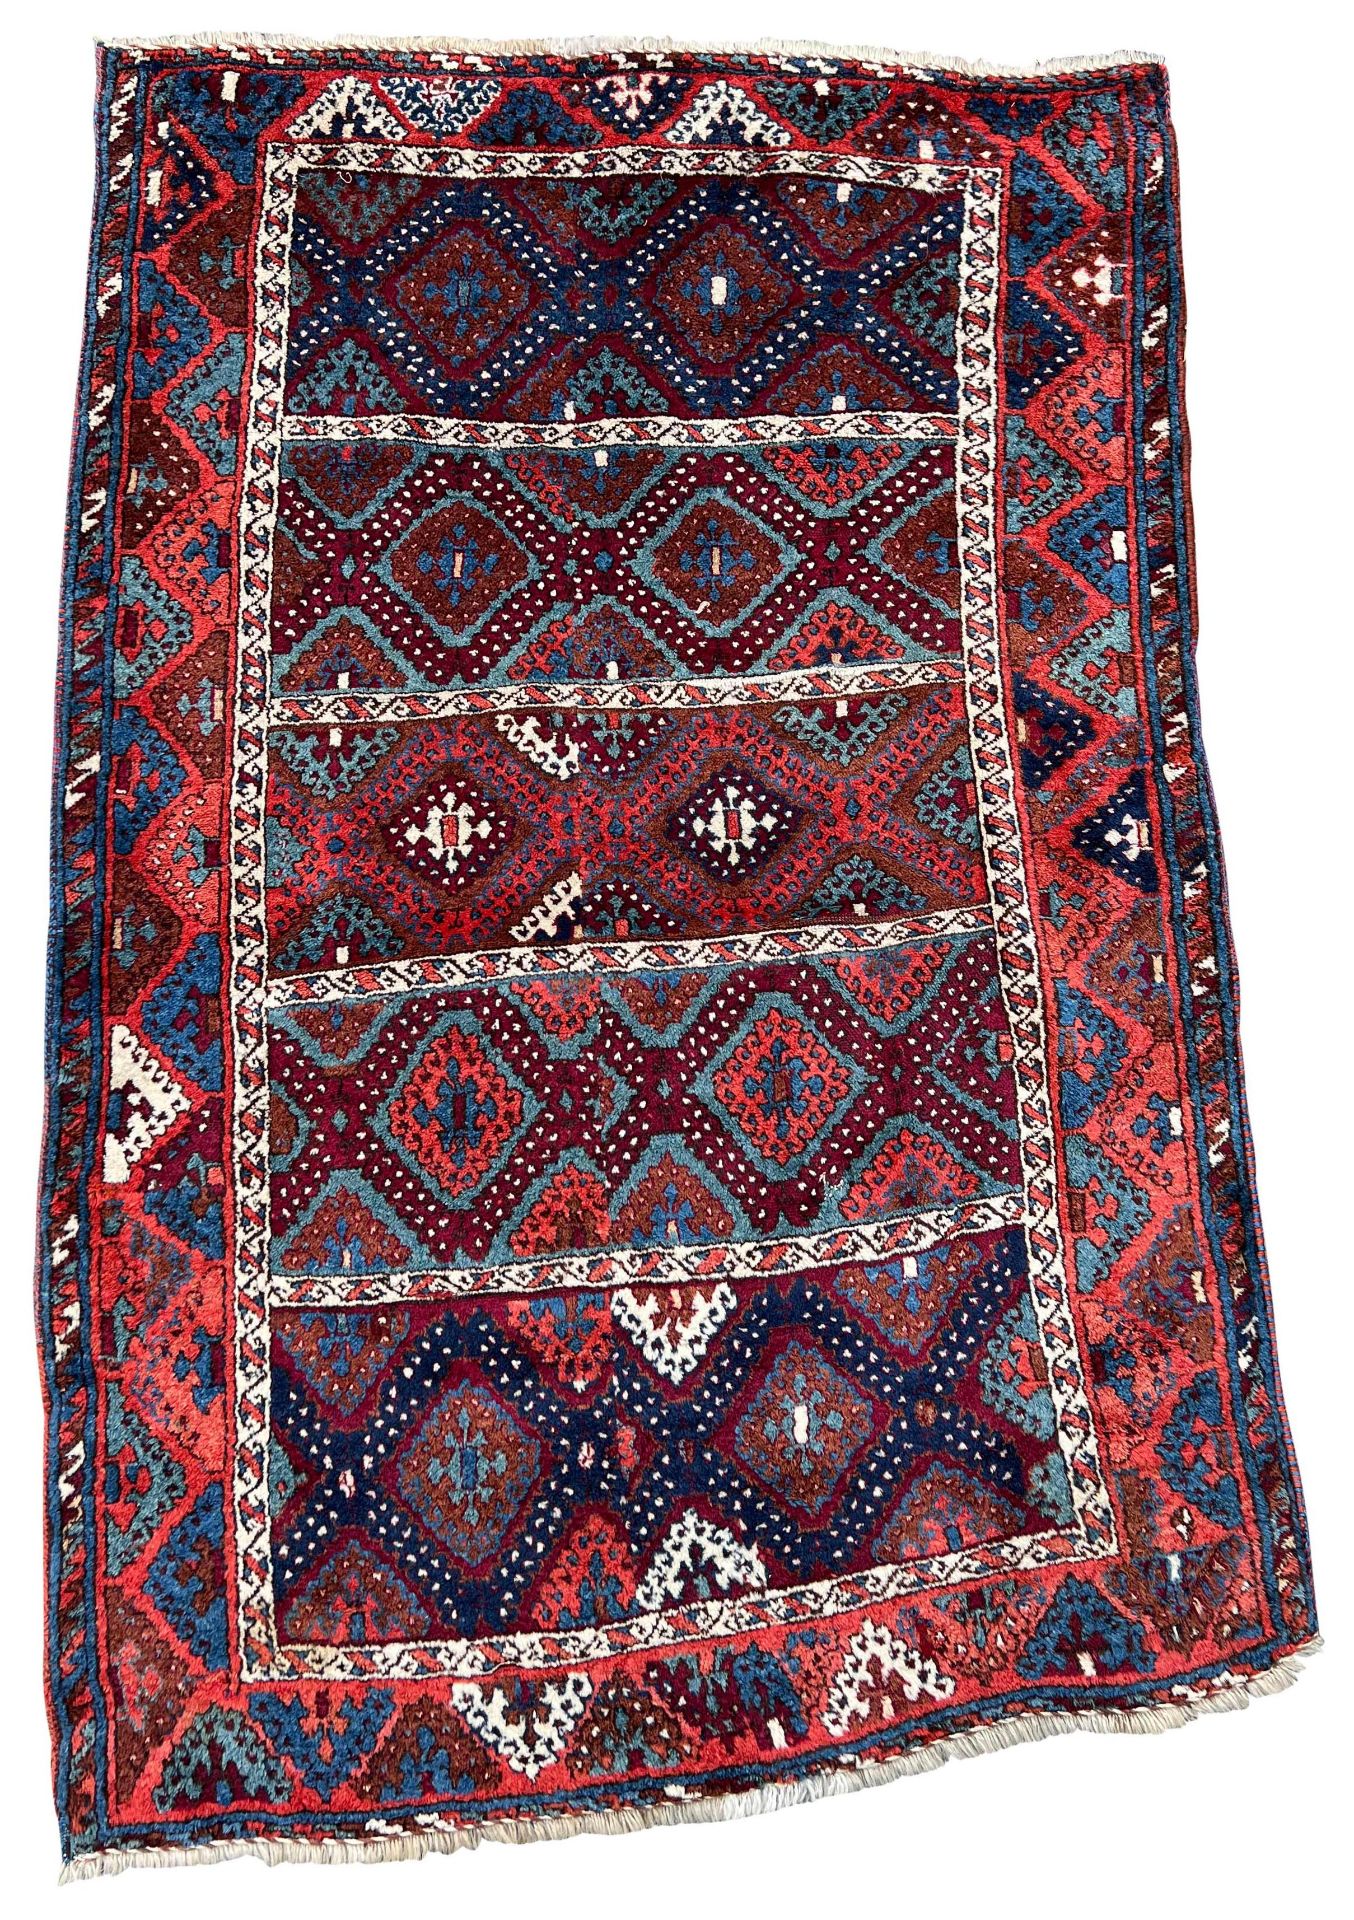 Yuruk. Village carpet. Turkey. Around 1900.